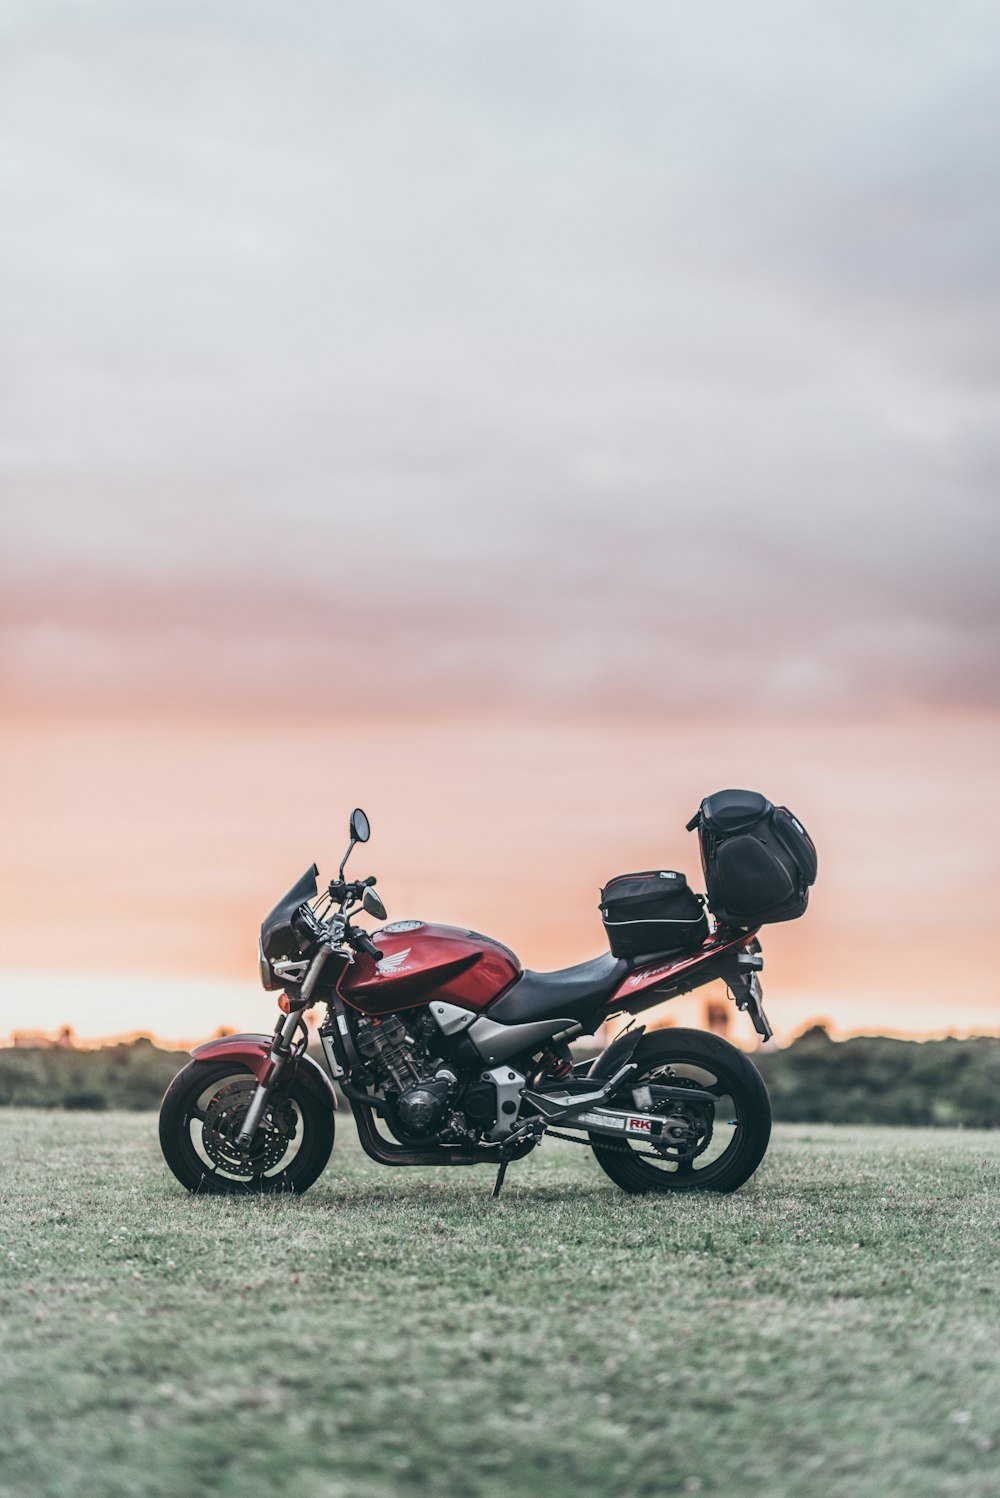 motocicleta nua preta e vermelha